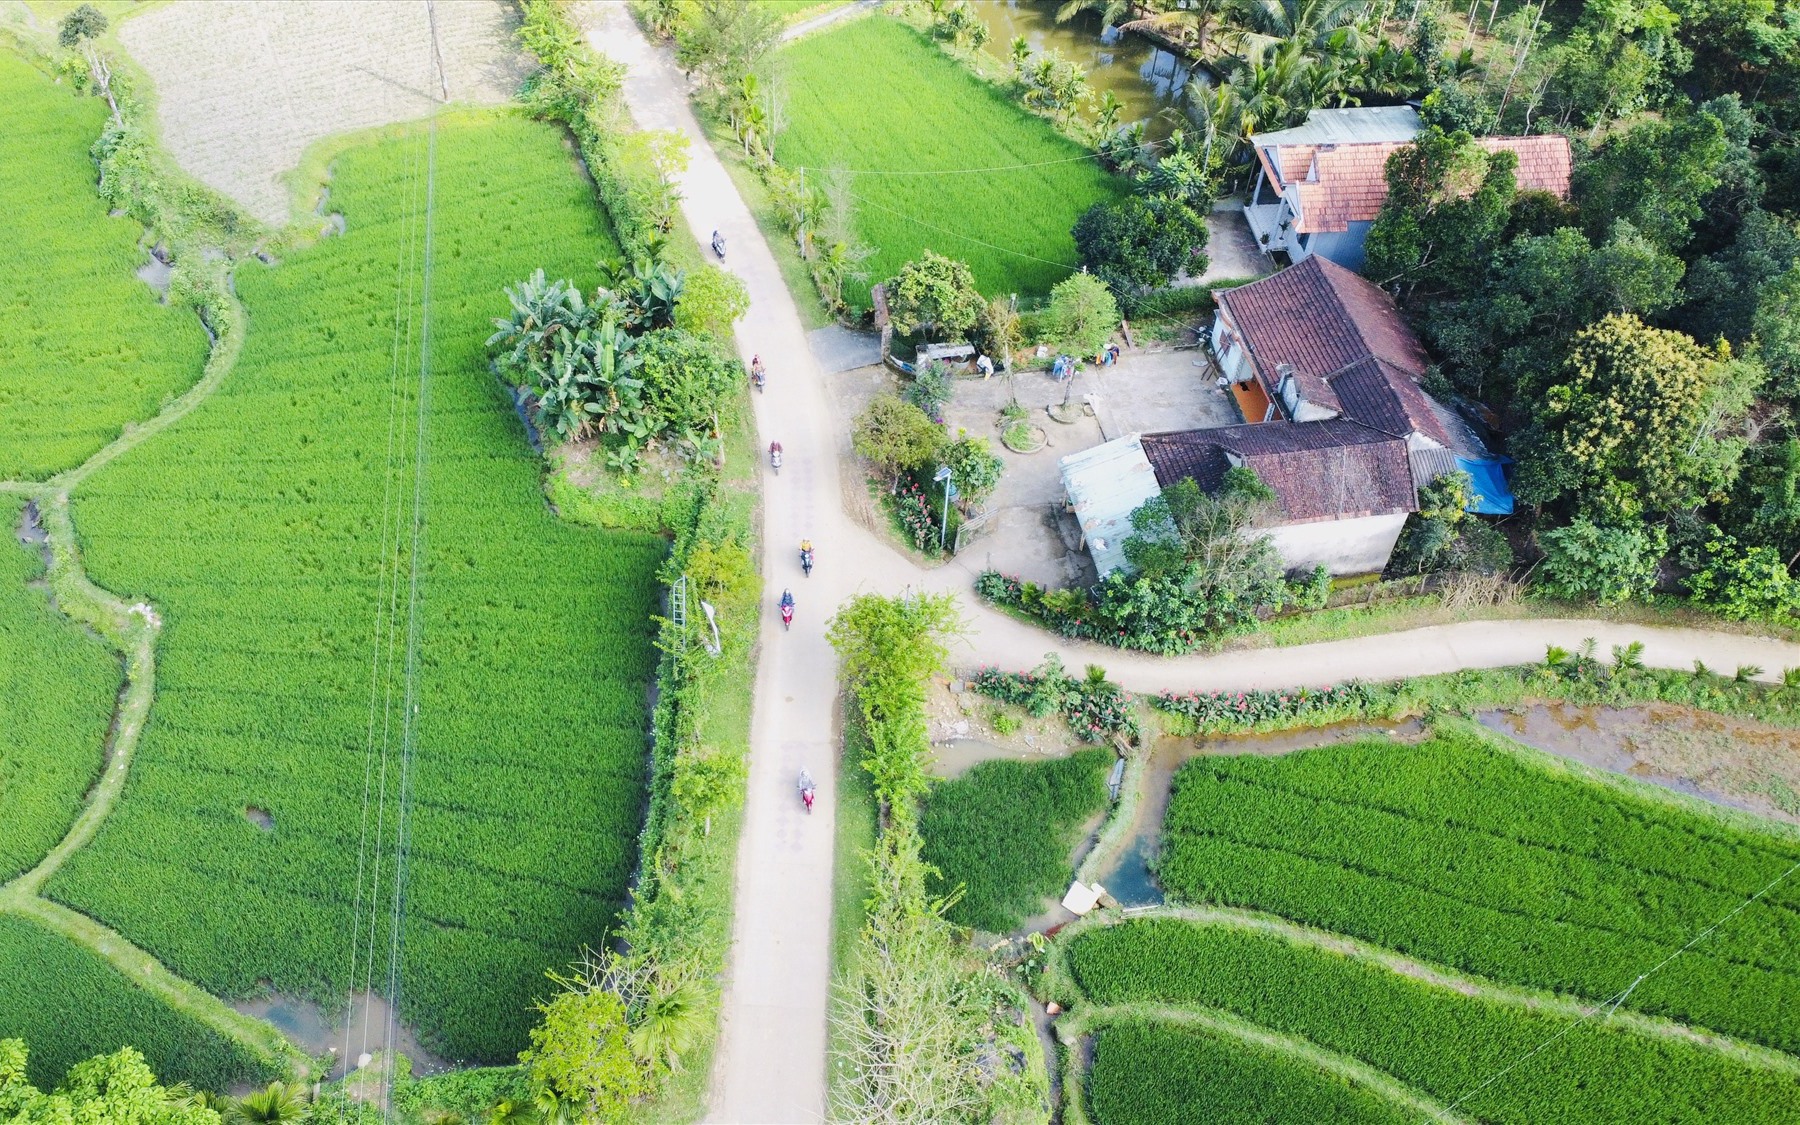 Đây là một làng cổ đẹp ở Quảng Nam còn nhiều nhà cổ, chưa bao giờ khóa cổng, thoải mái vô chụp ảnh, quay phim